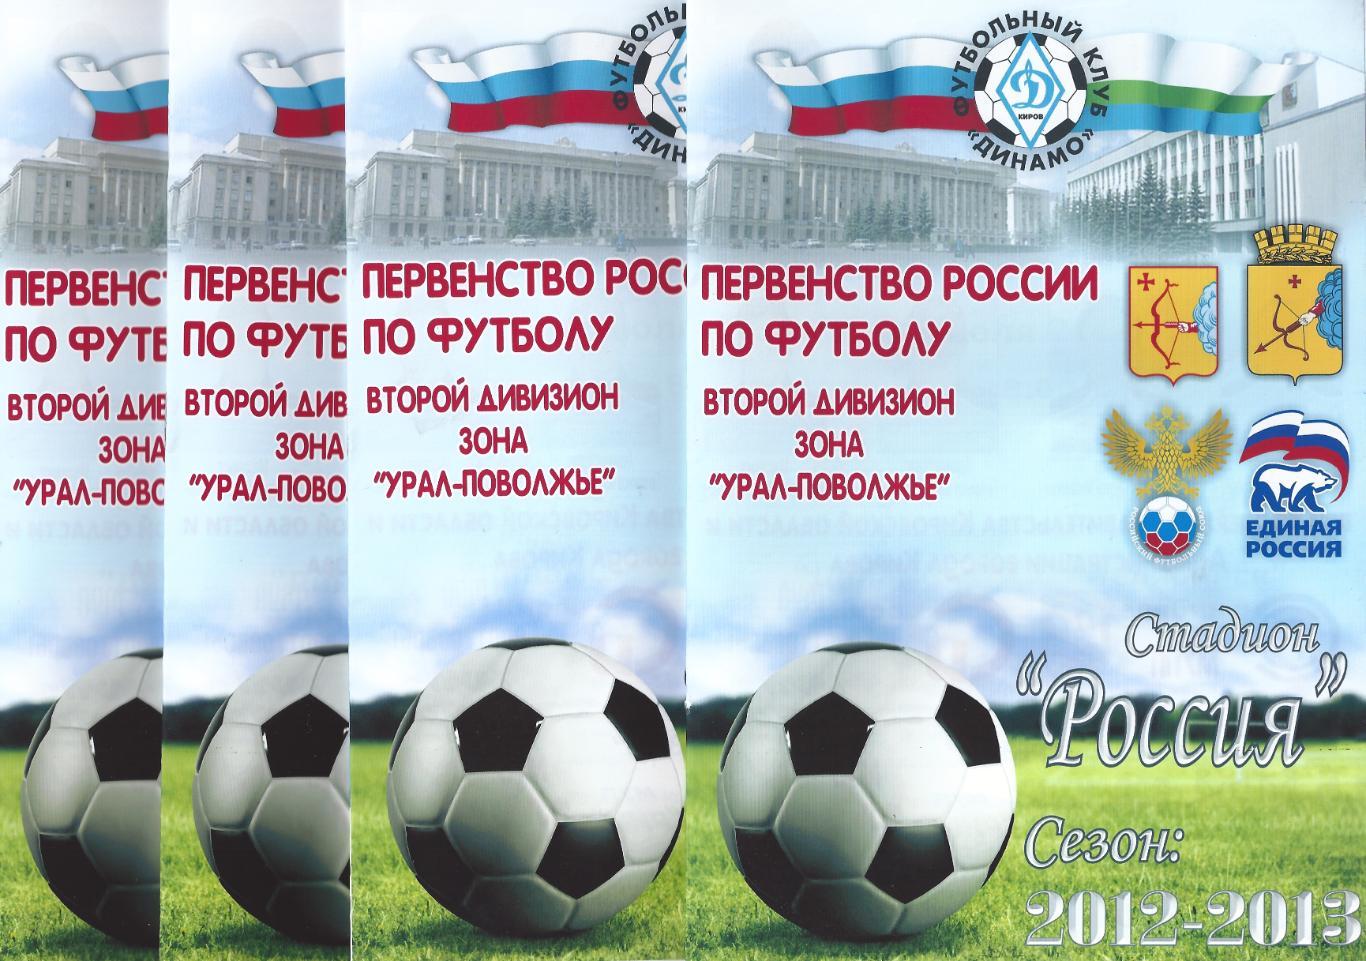 2012/2013 - Динамо Киров - Спартак Йошкар-Ола